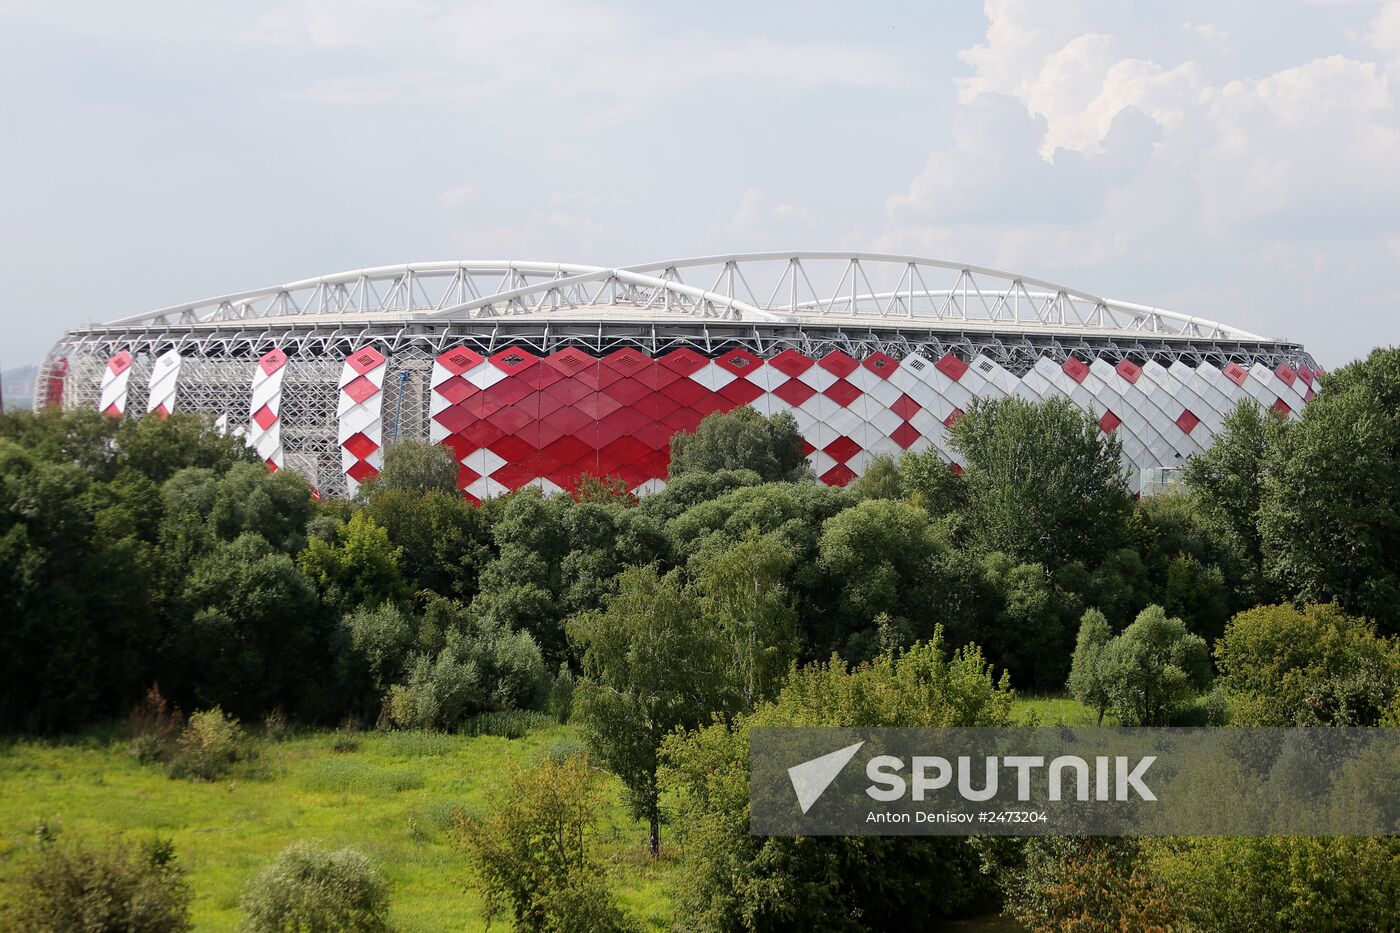 Construction of Spartak stadium "Otkrytiye-Arena"